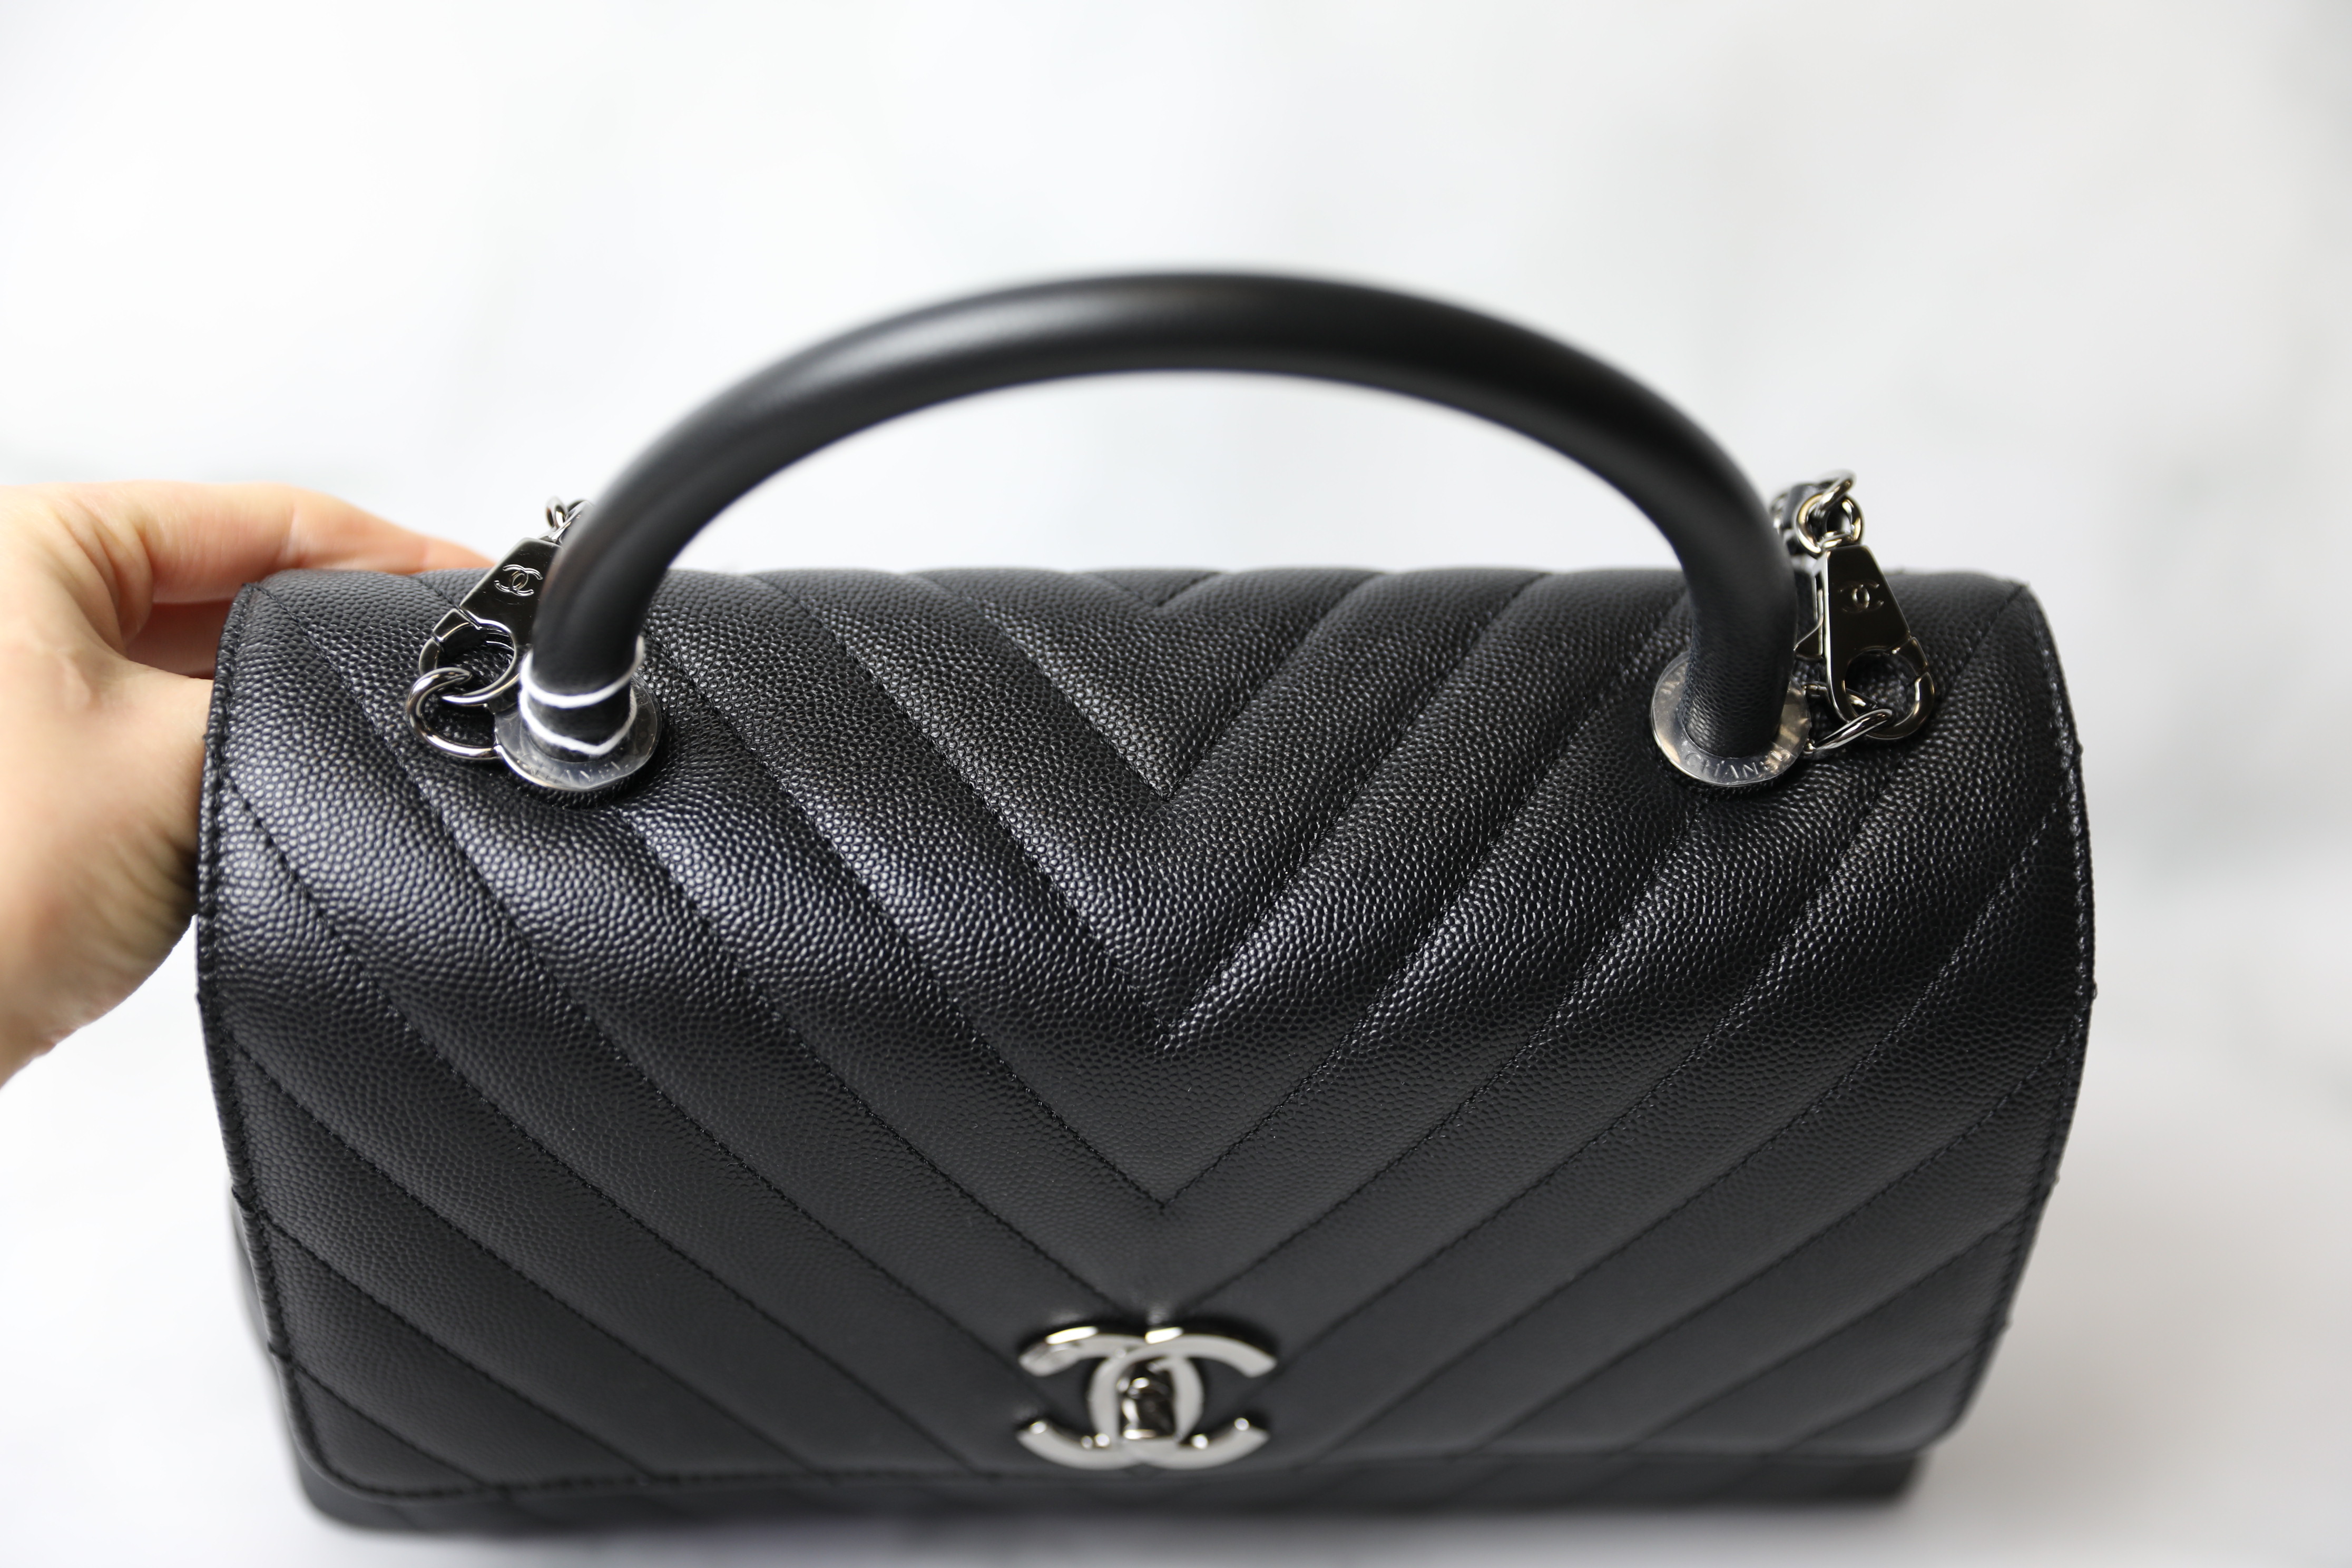 Chanel Coco Handle Small, Black Caviar Leather, Shiny Ruthenium Hardware,  Chevron, New in Box WA001